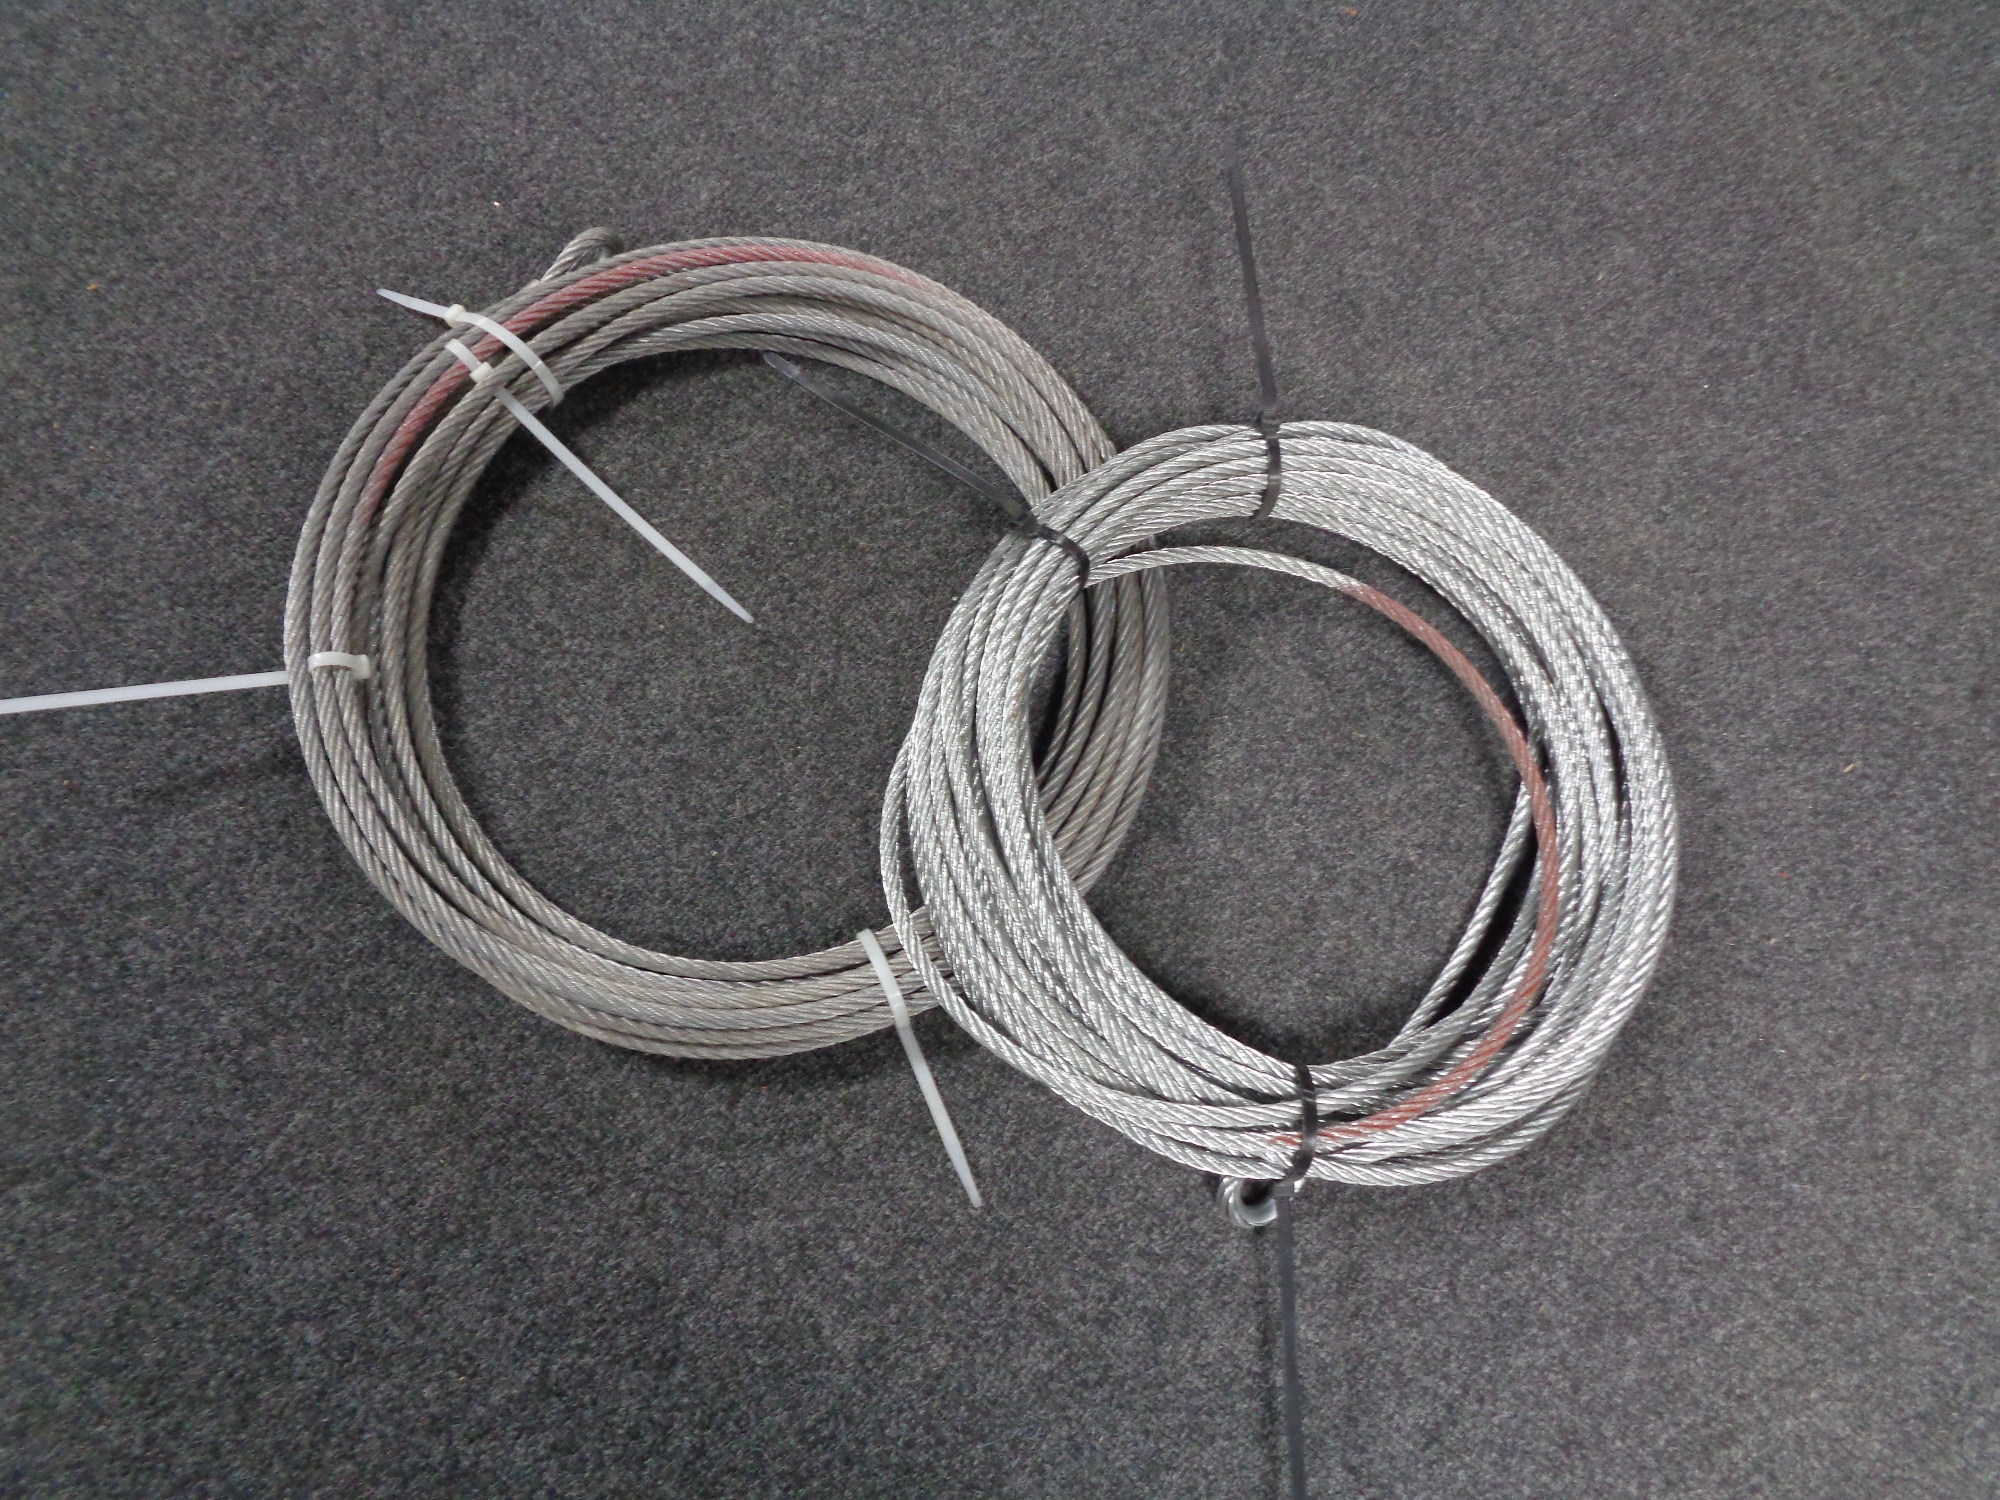 Two reels of steel cabling